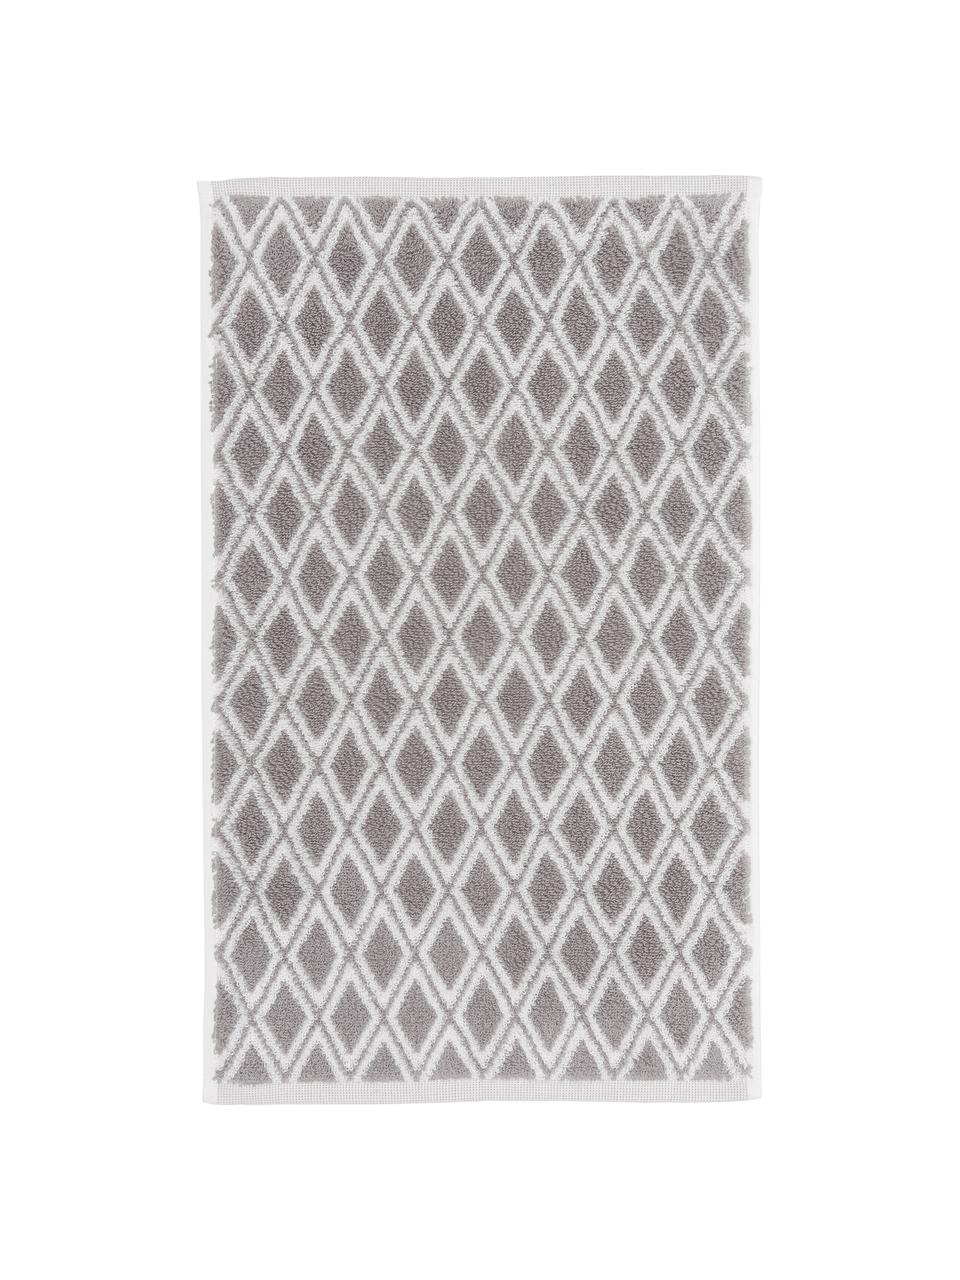 Obojstranný uterák s grafickým vzorom Ava, 100 % bavlna
Stredná gramáž 550 g/m², Sivobéžová, krémovobiela, Uterák, Š 50 x D 100 cm, 2 ks